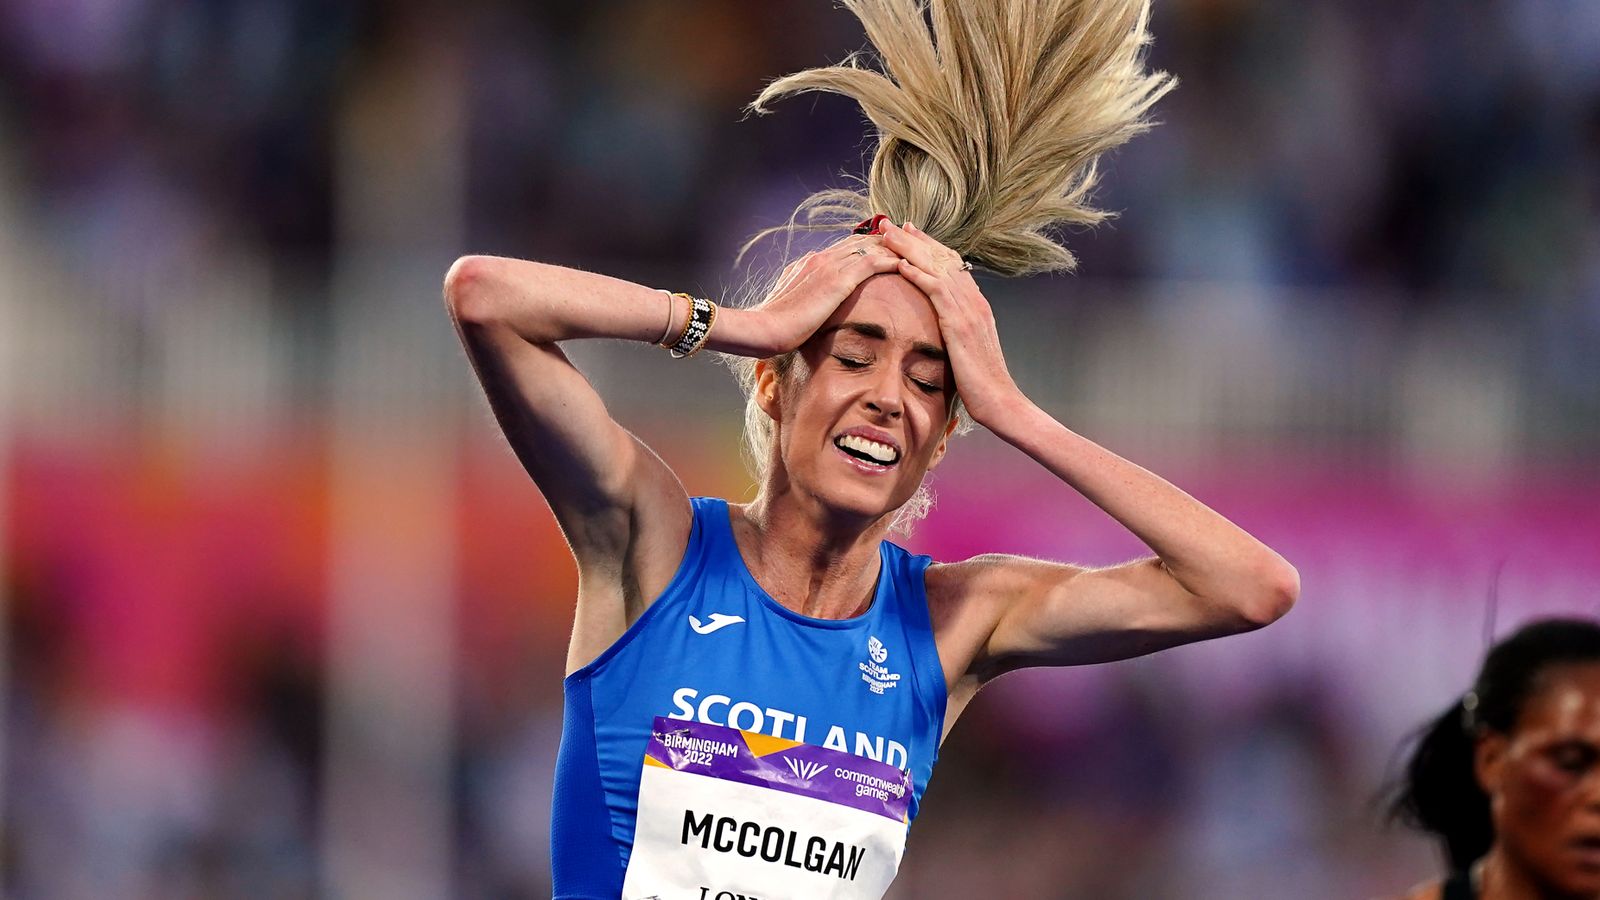 eilish-mccolgan-breaks-paula-radcliffe-s-british-women-s-10-000m-record-in-california